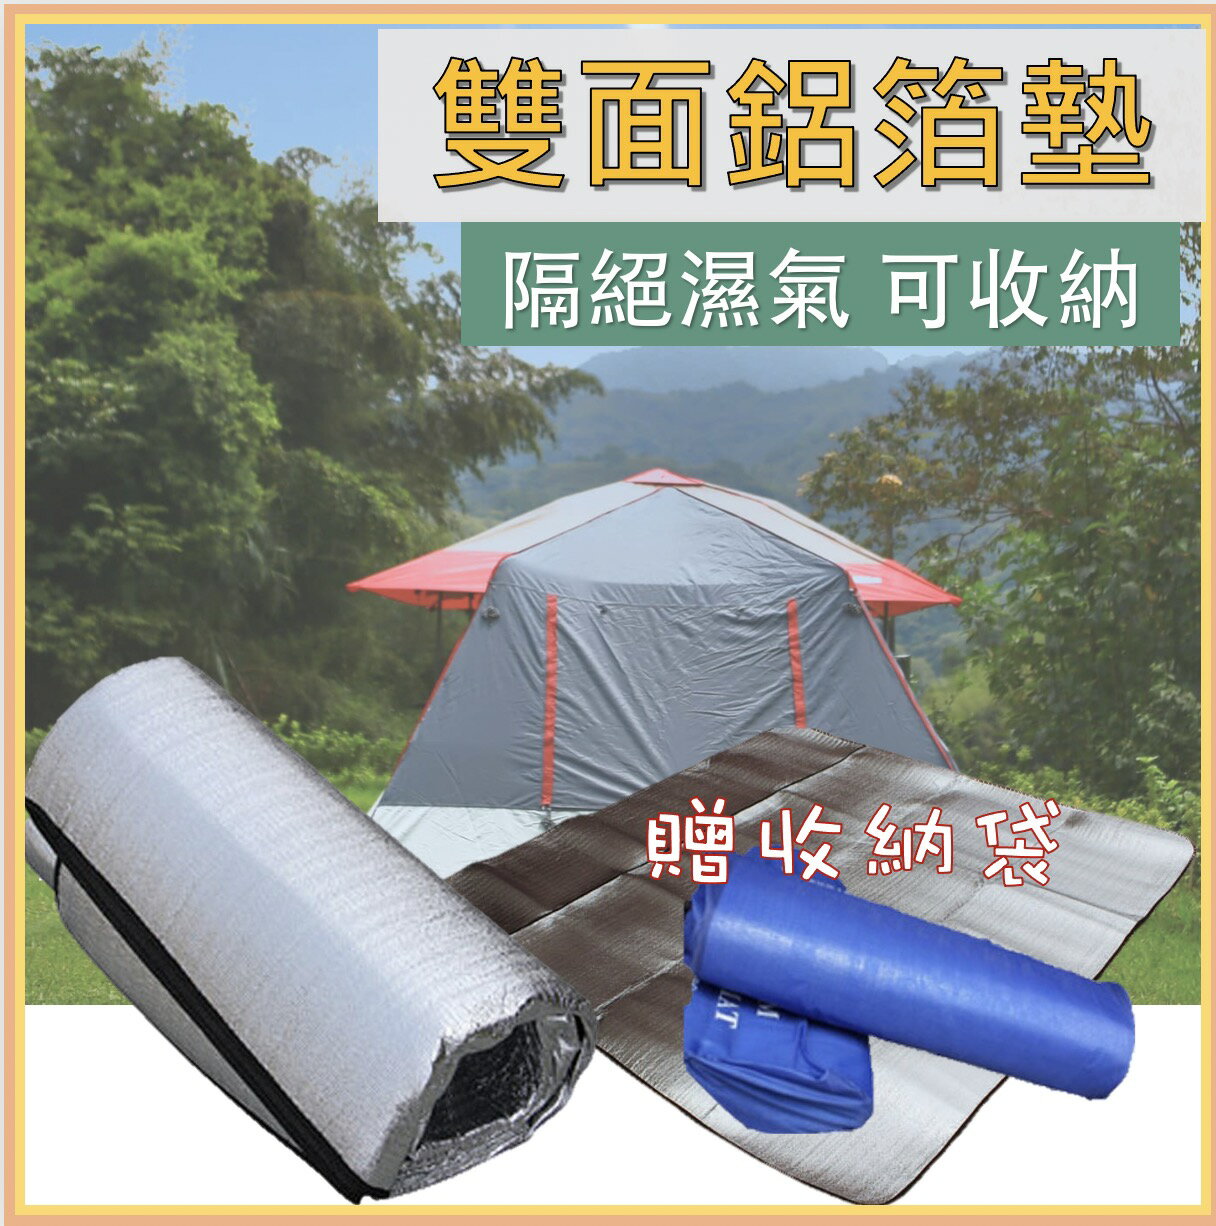 雙面鋁箔墊 露營用具 野餐 戶外野餐墊 雙面防水防潮 戶外露營墊 三種尺寸 可收納